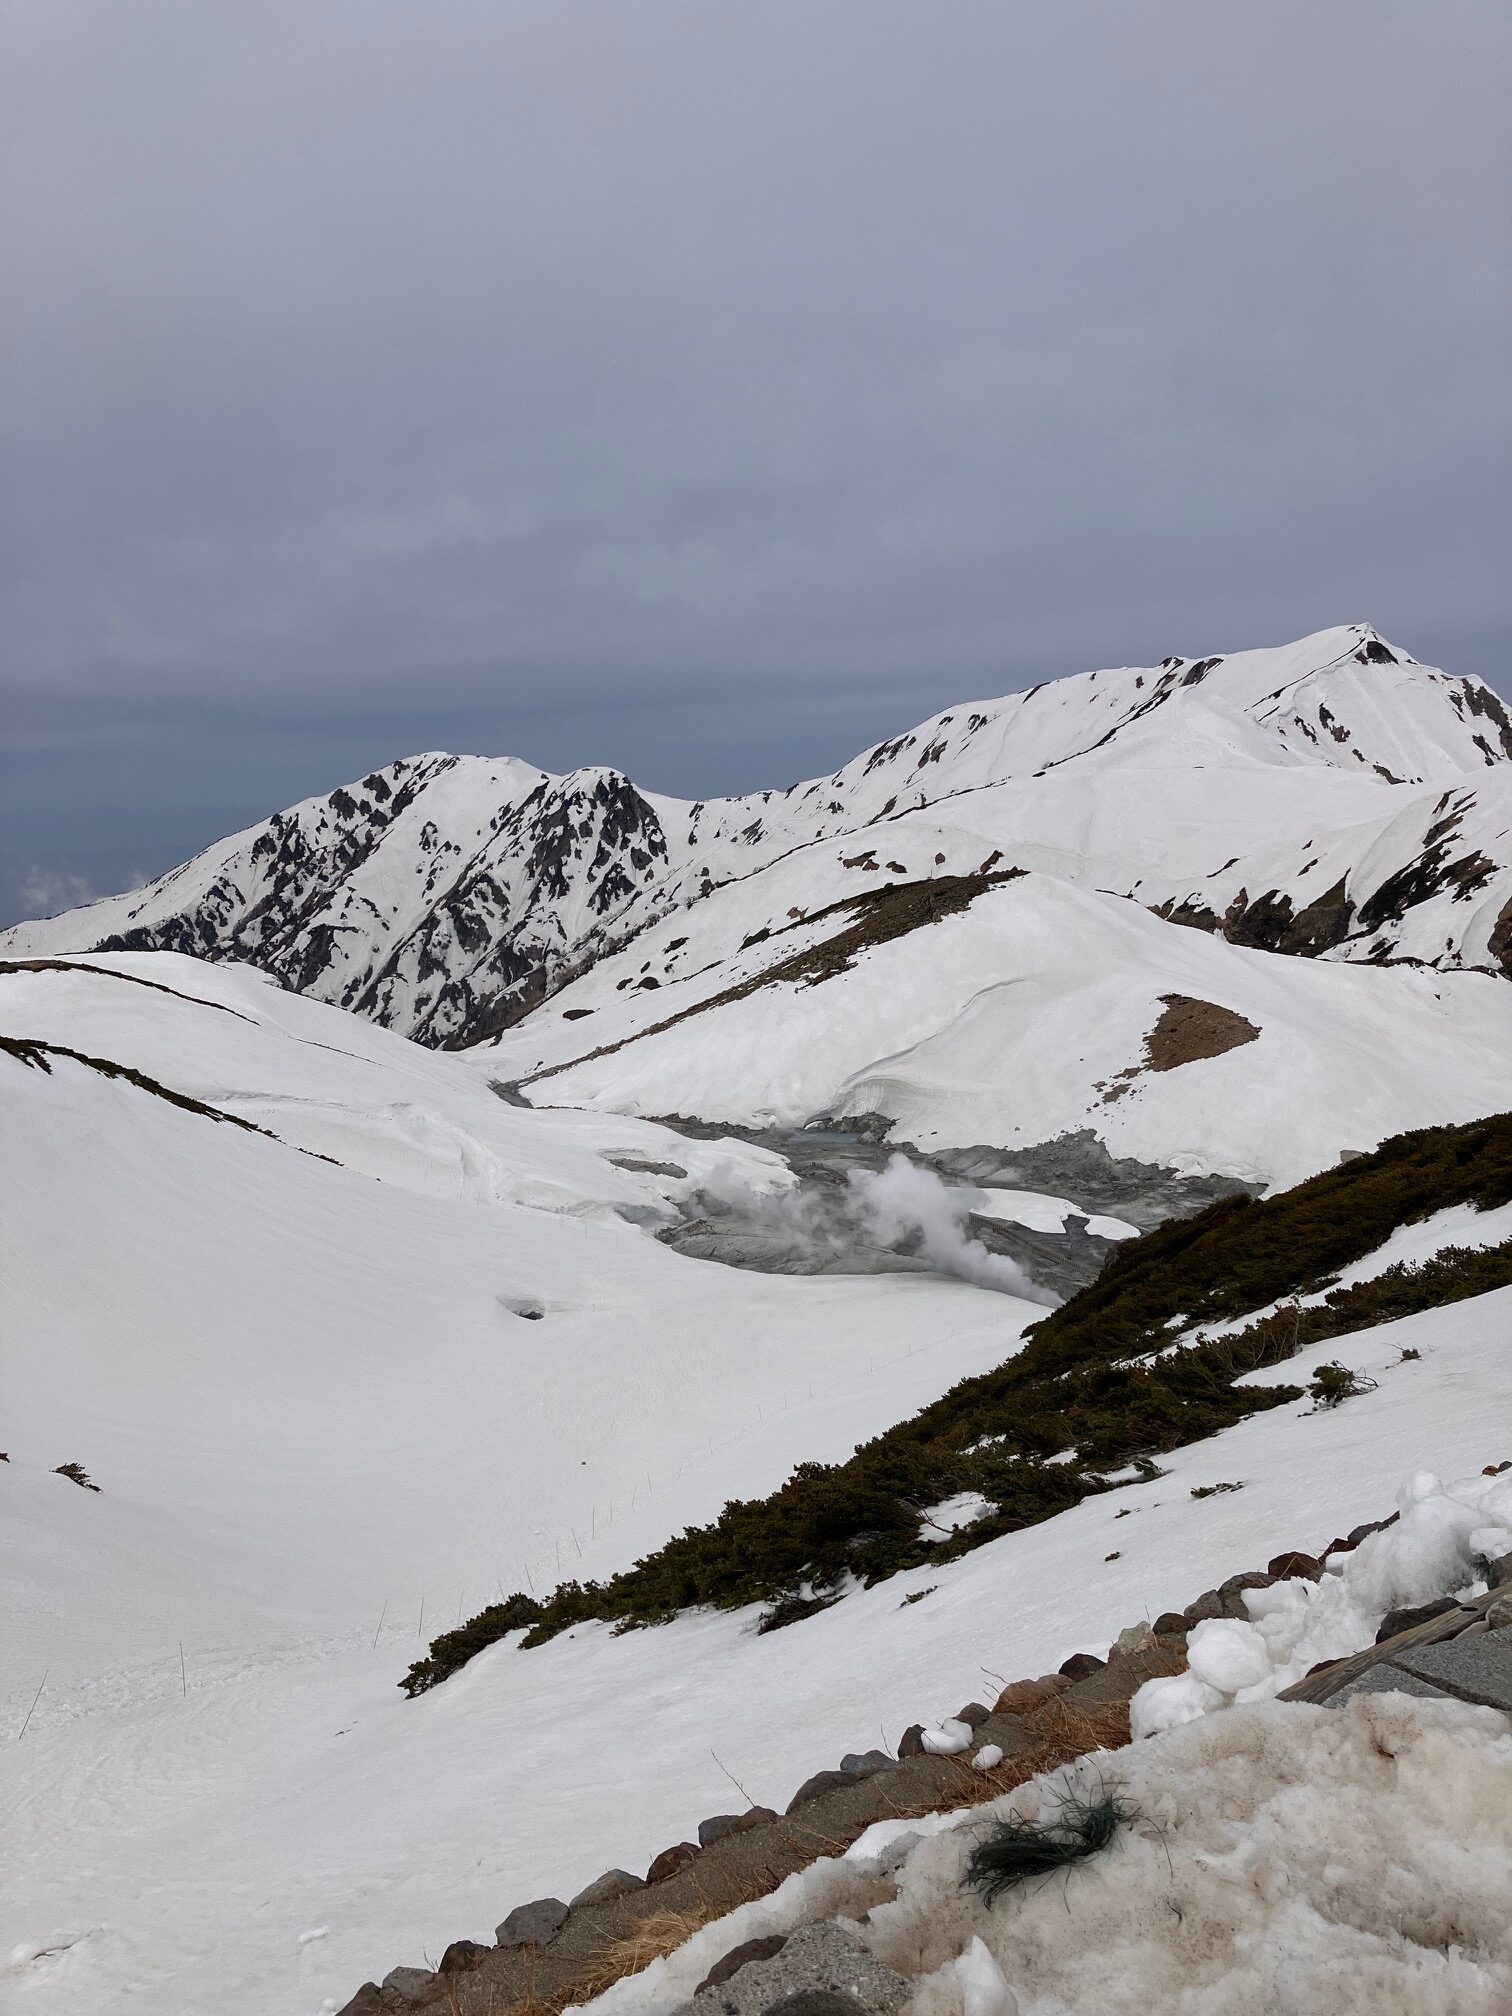 今年のアルペンルート開通を祝し、雪の大谷を訪ねました。